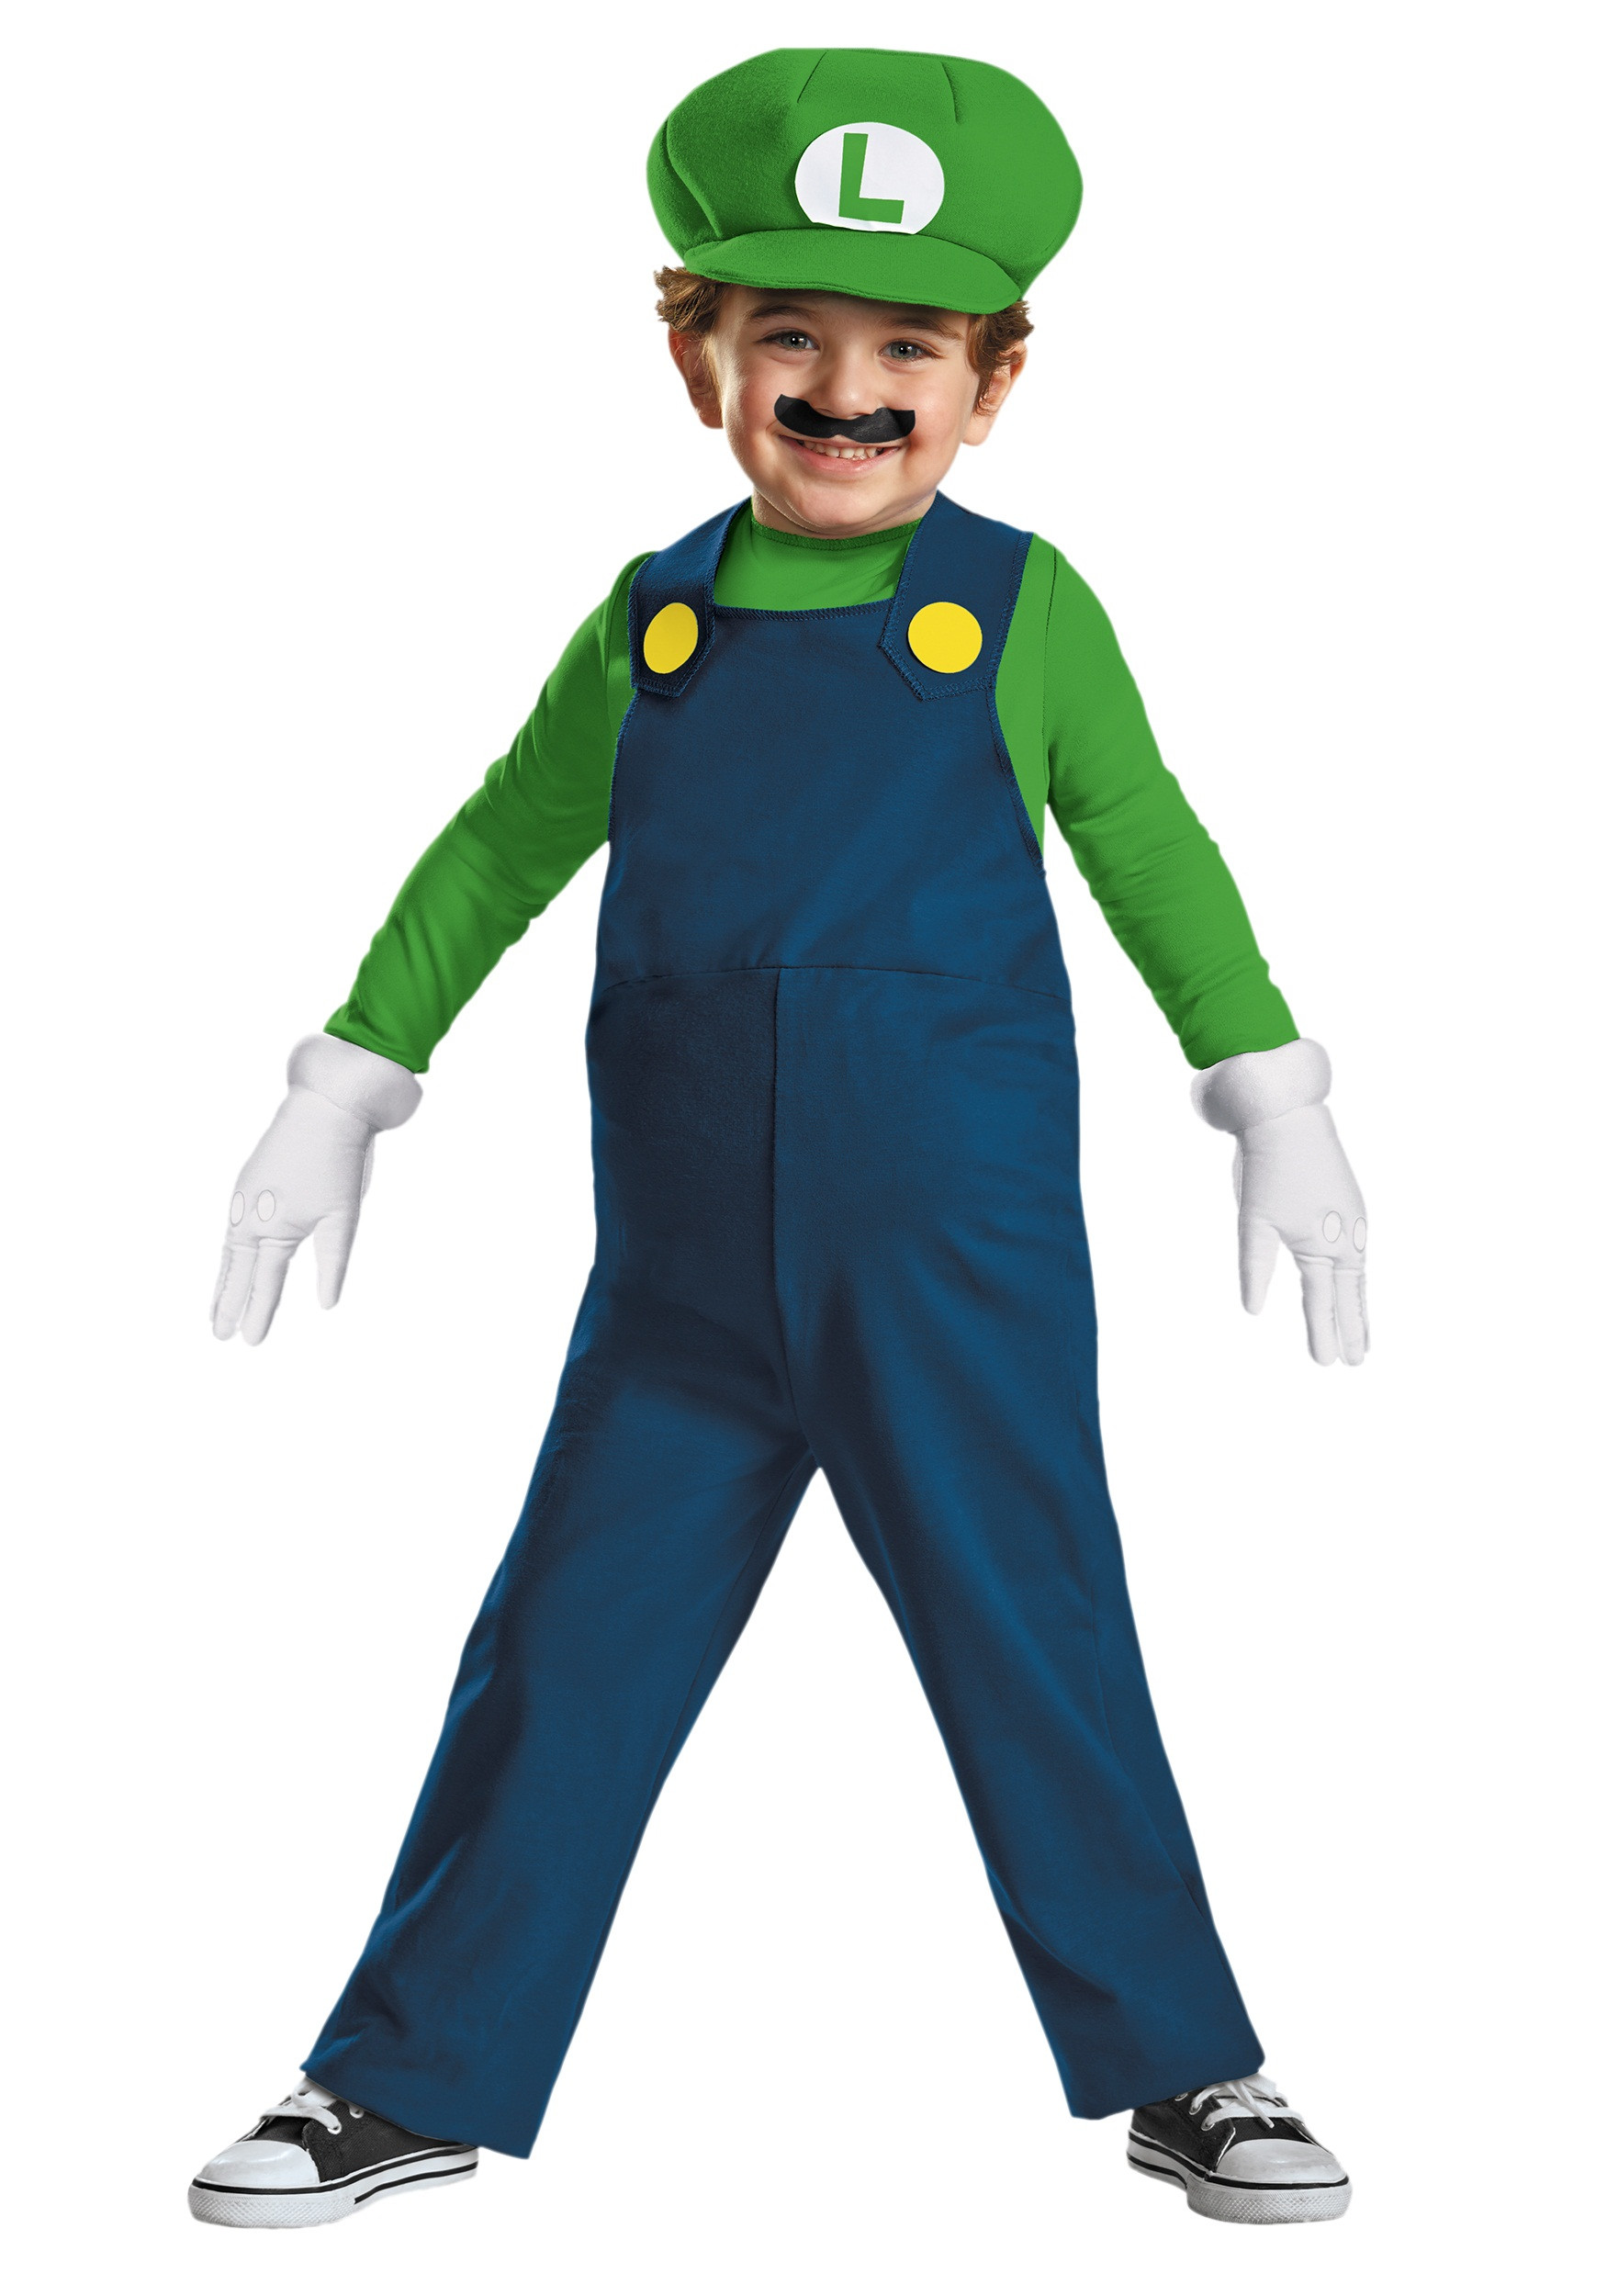 Mario And Luigi DIY Costumes
 Toddler Luigi Costume